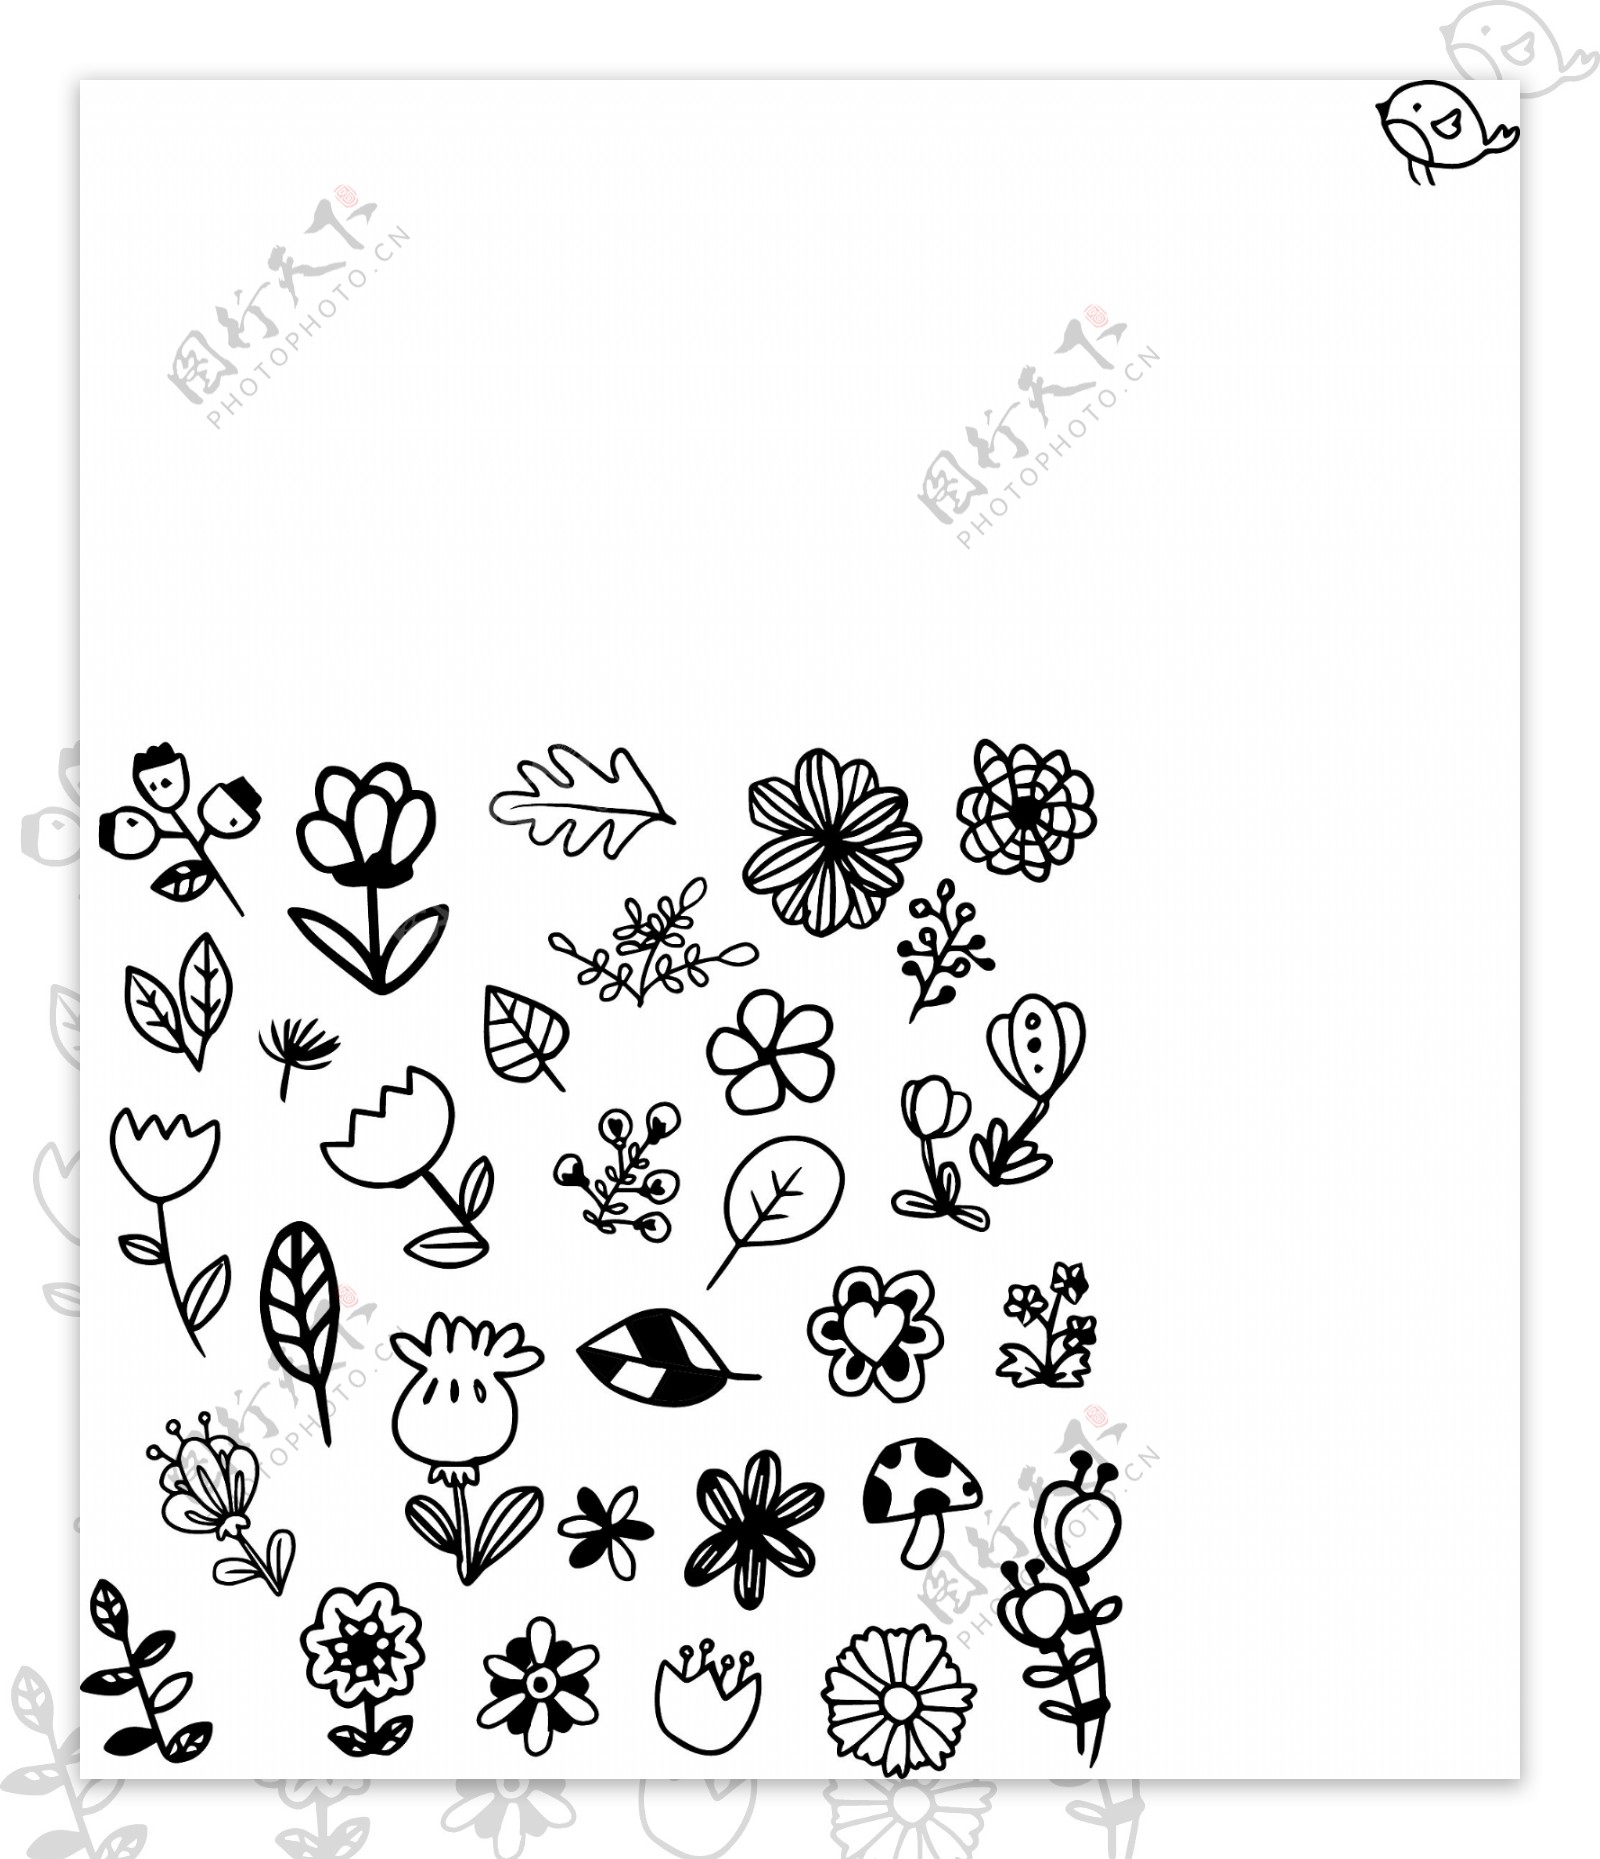 黑白鲜花插图集合